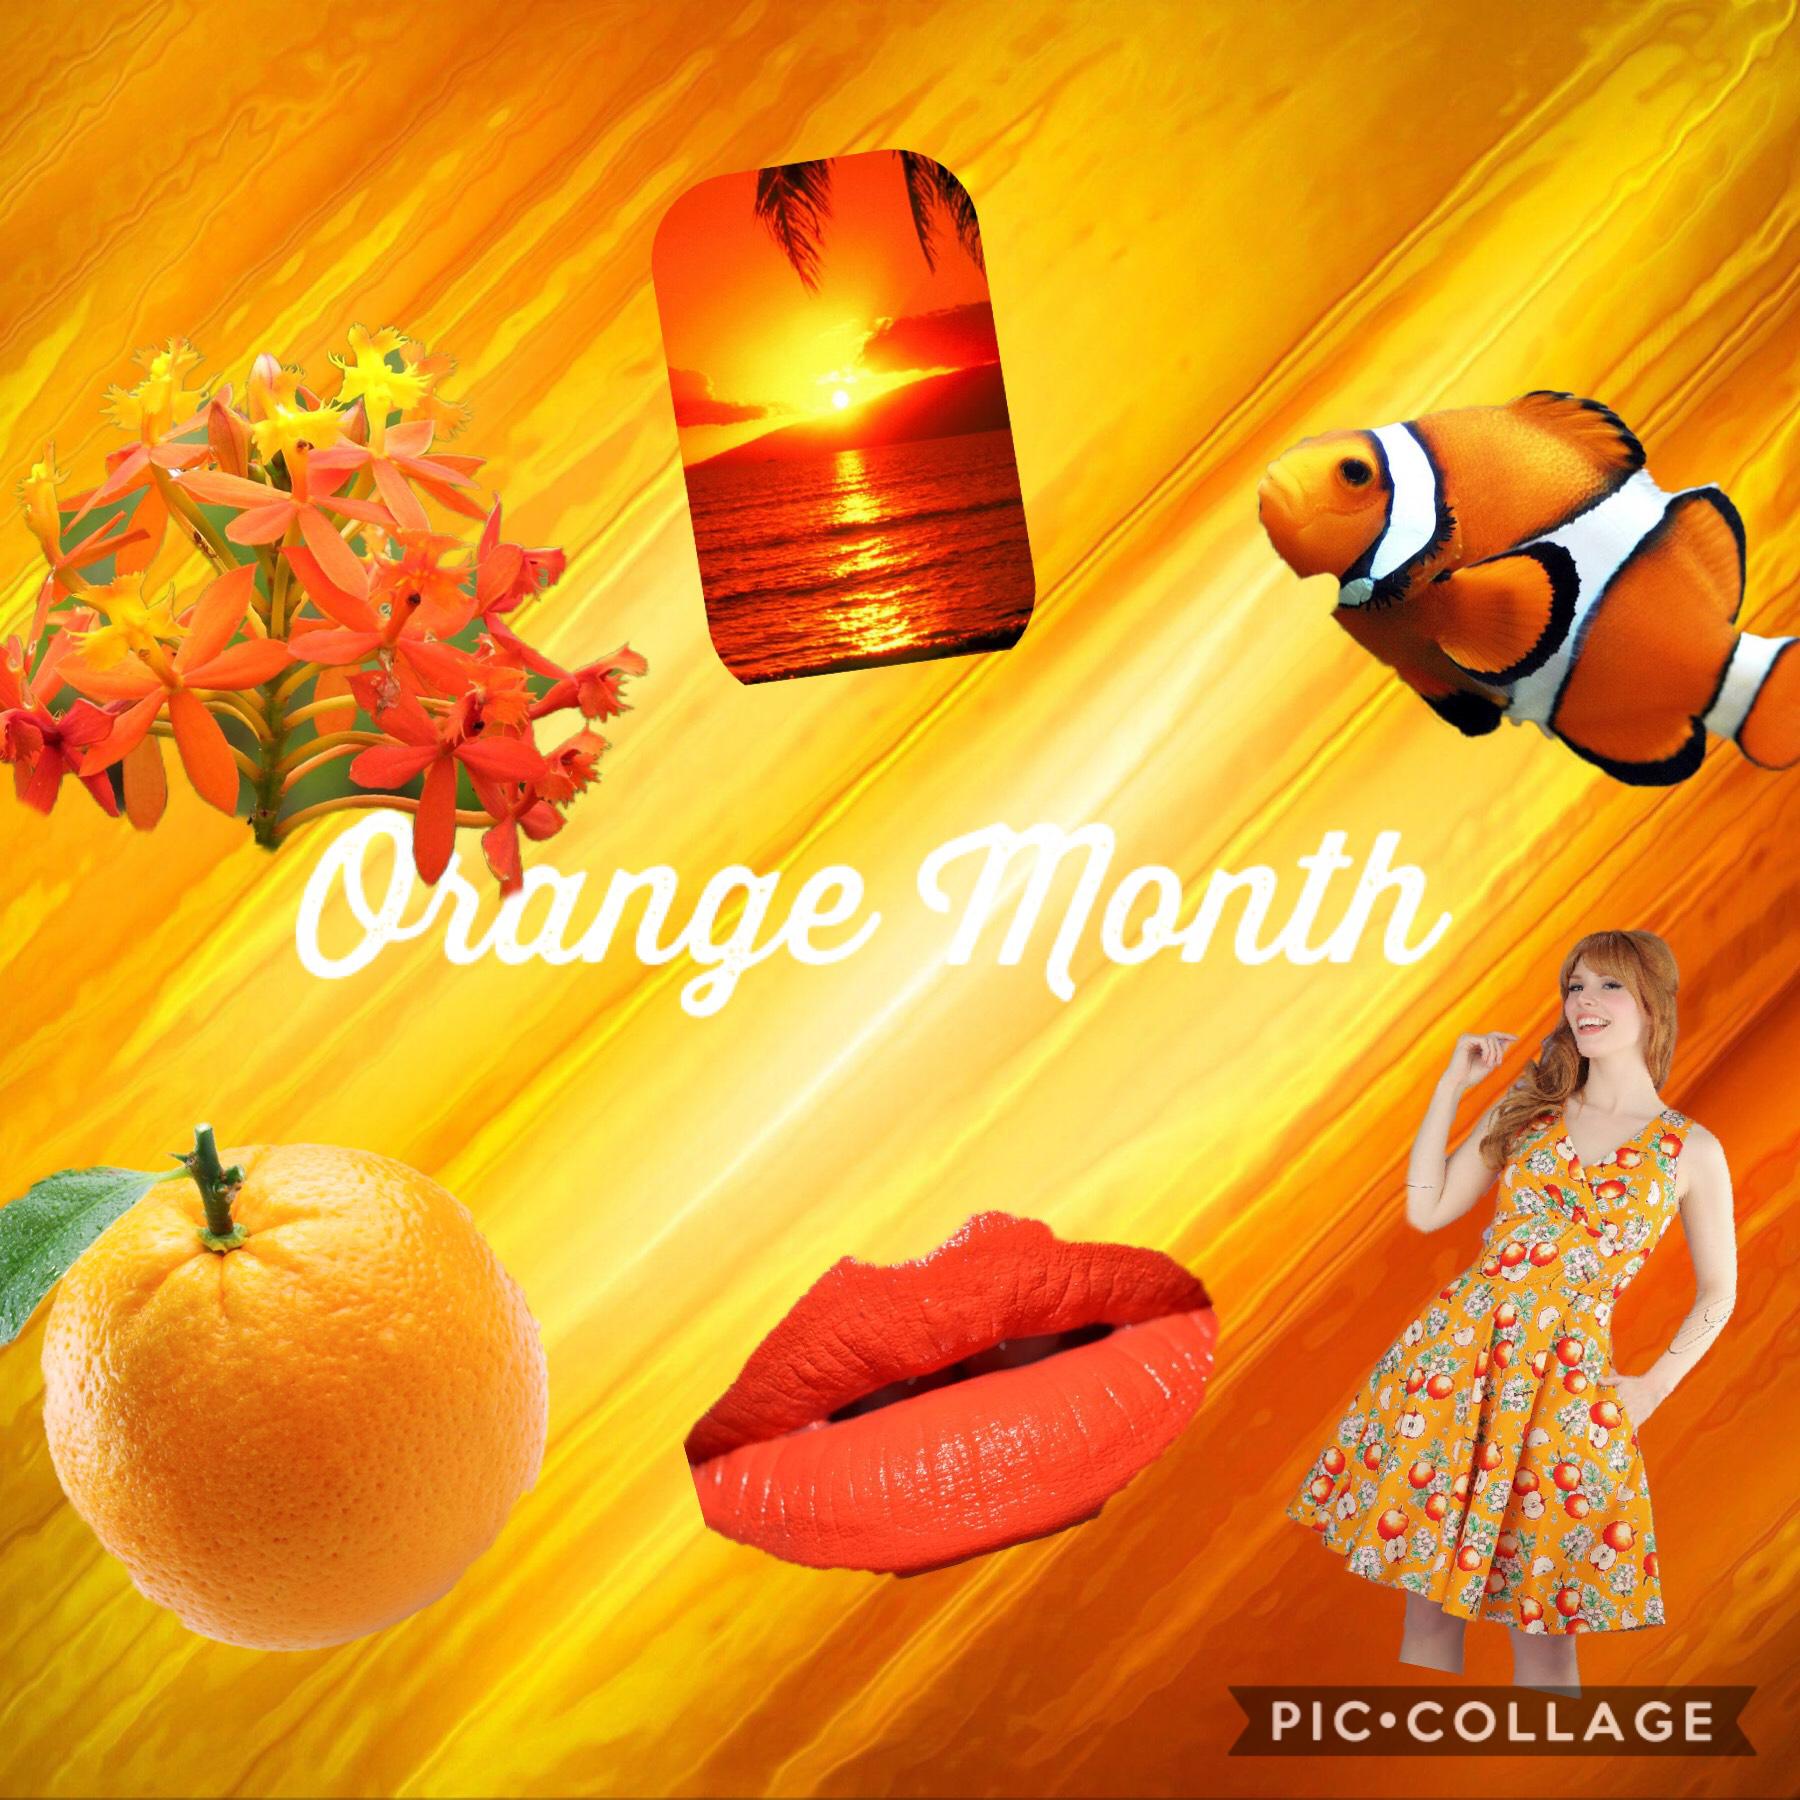 Orange Month Follow me on Pinterest @hgoodrichtx or Hanna